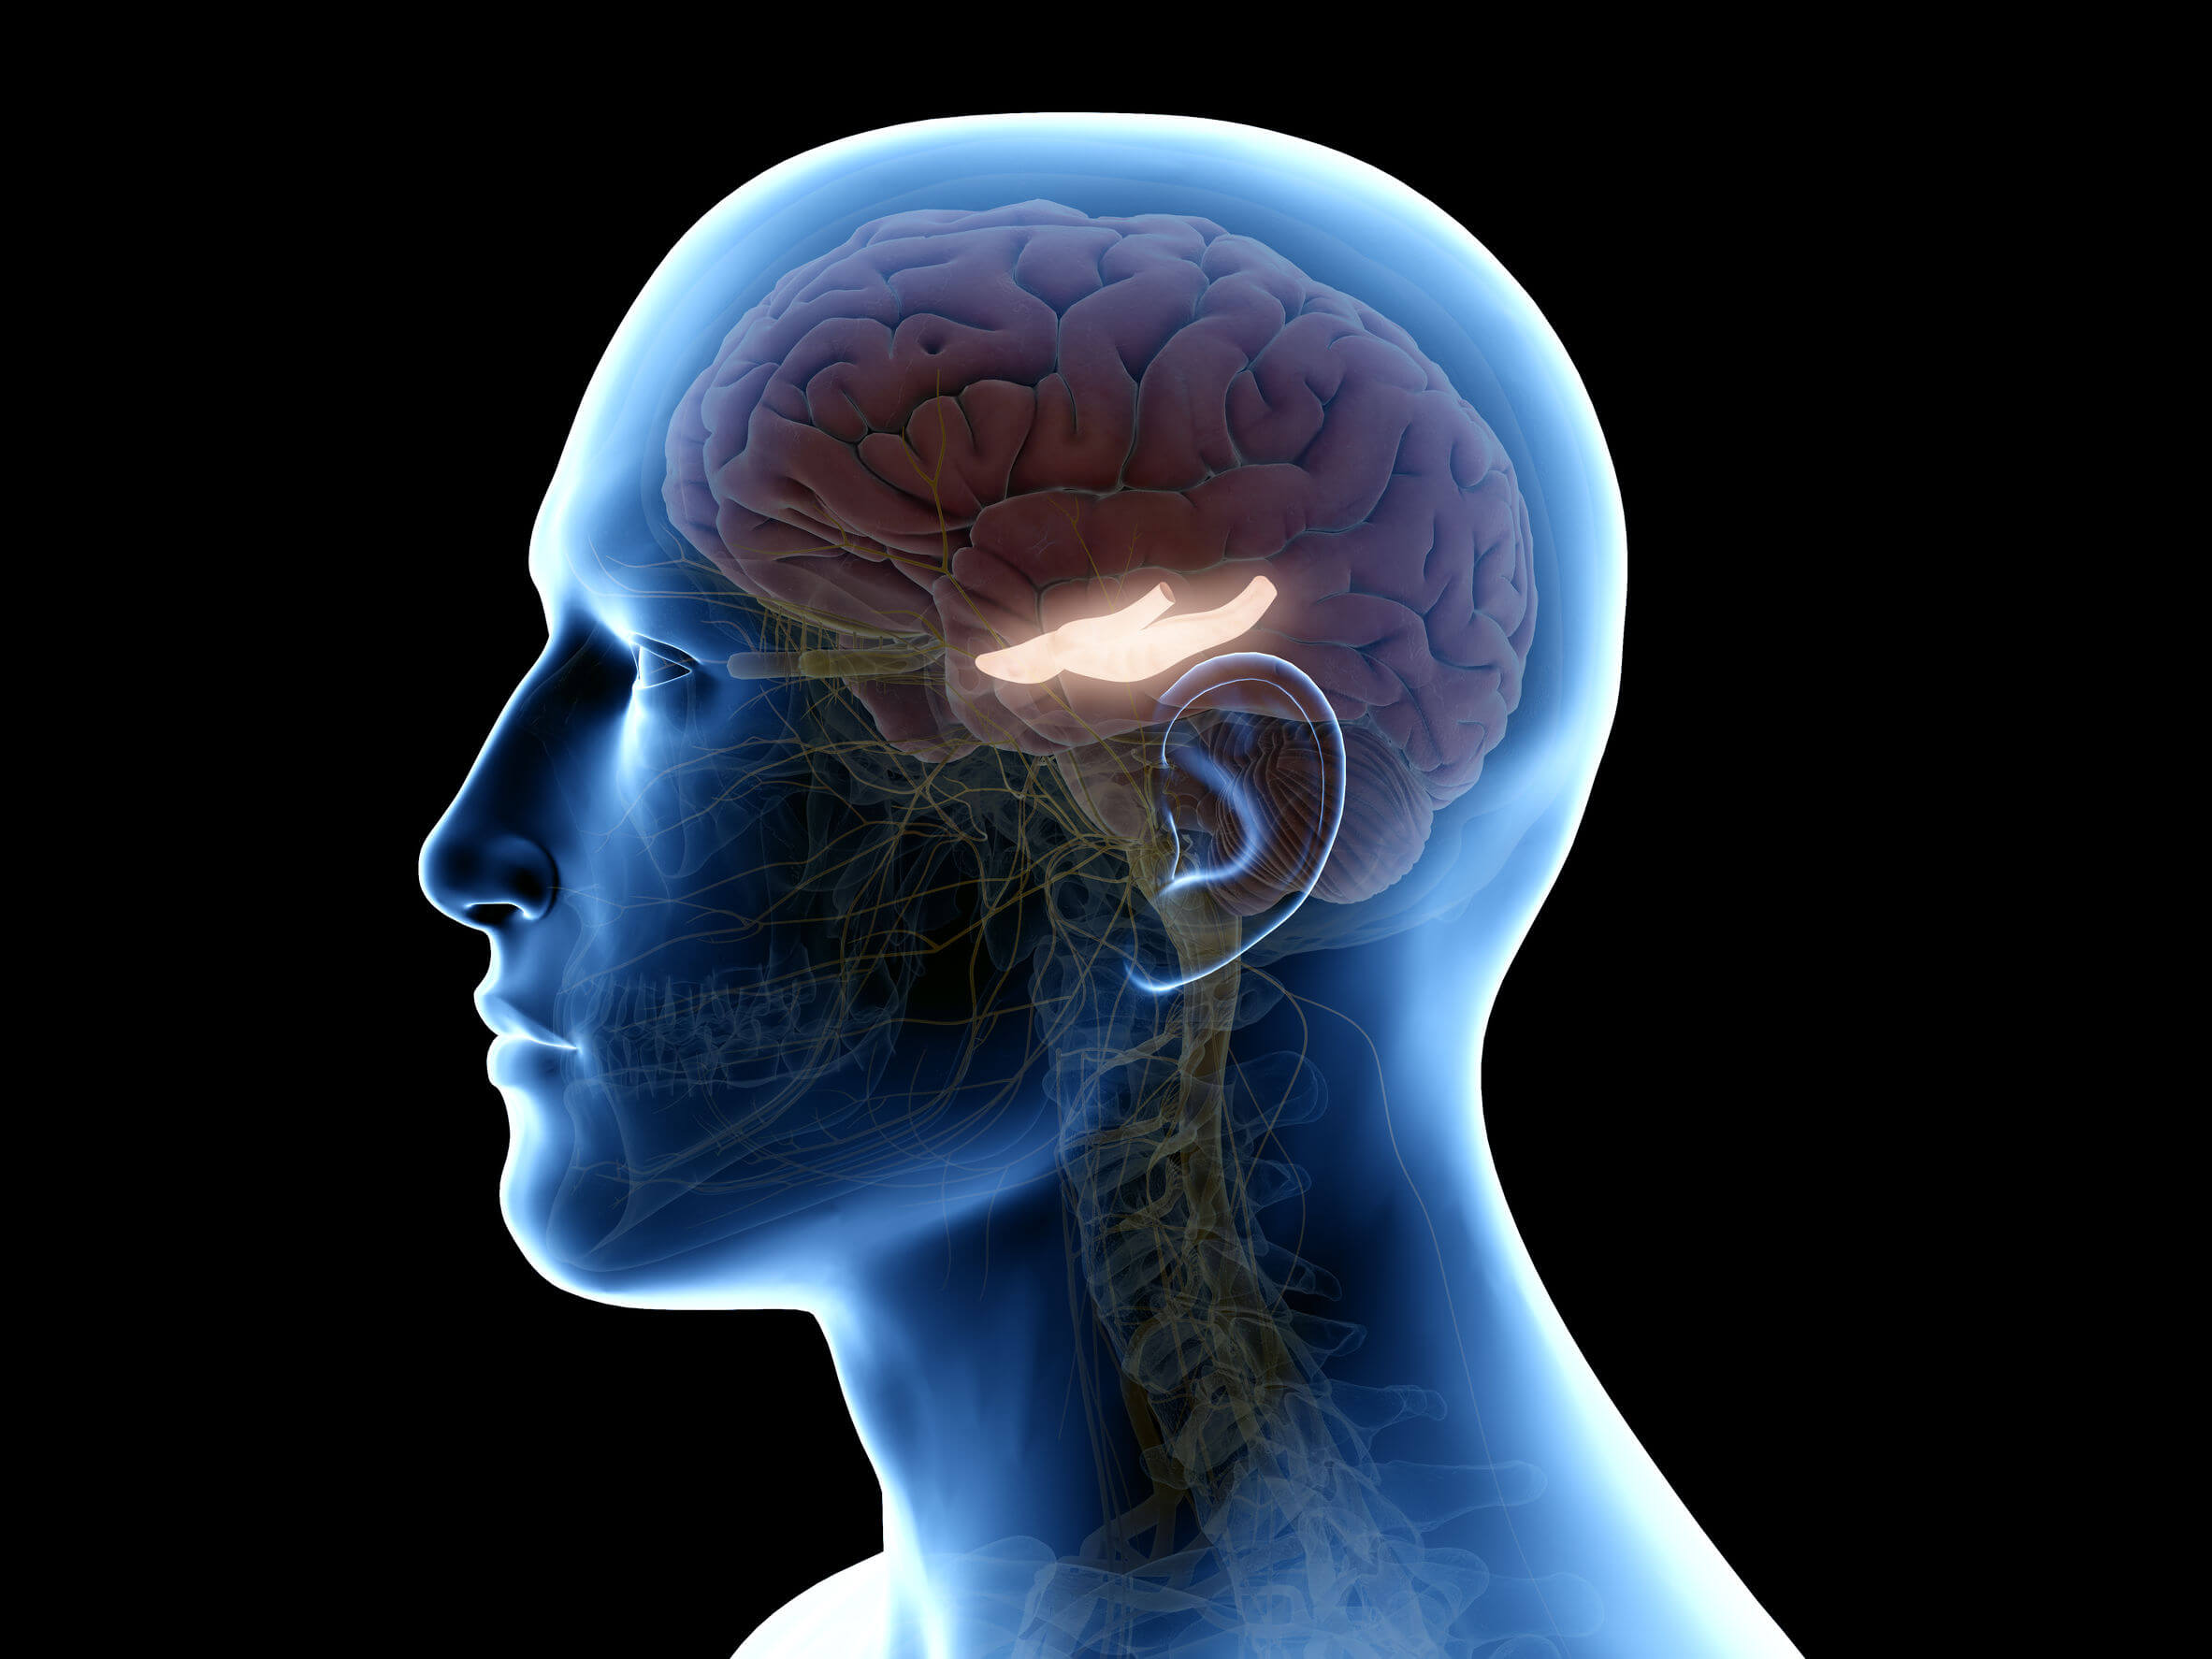 L'ippocampo si trova nella parte più interna del cervello.